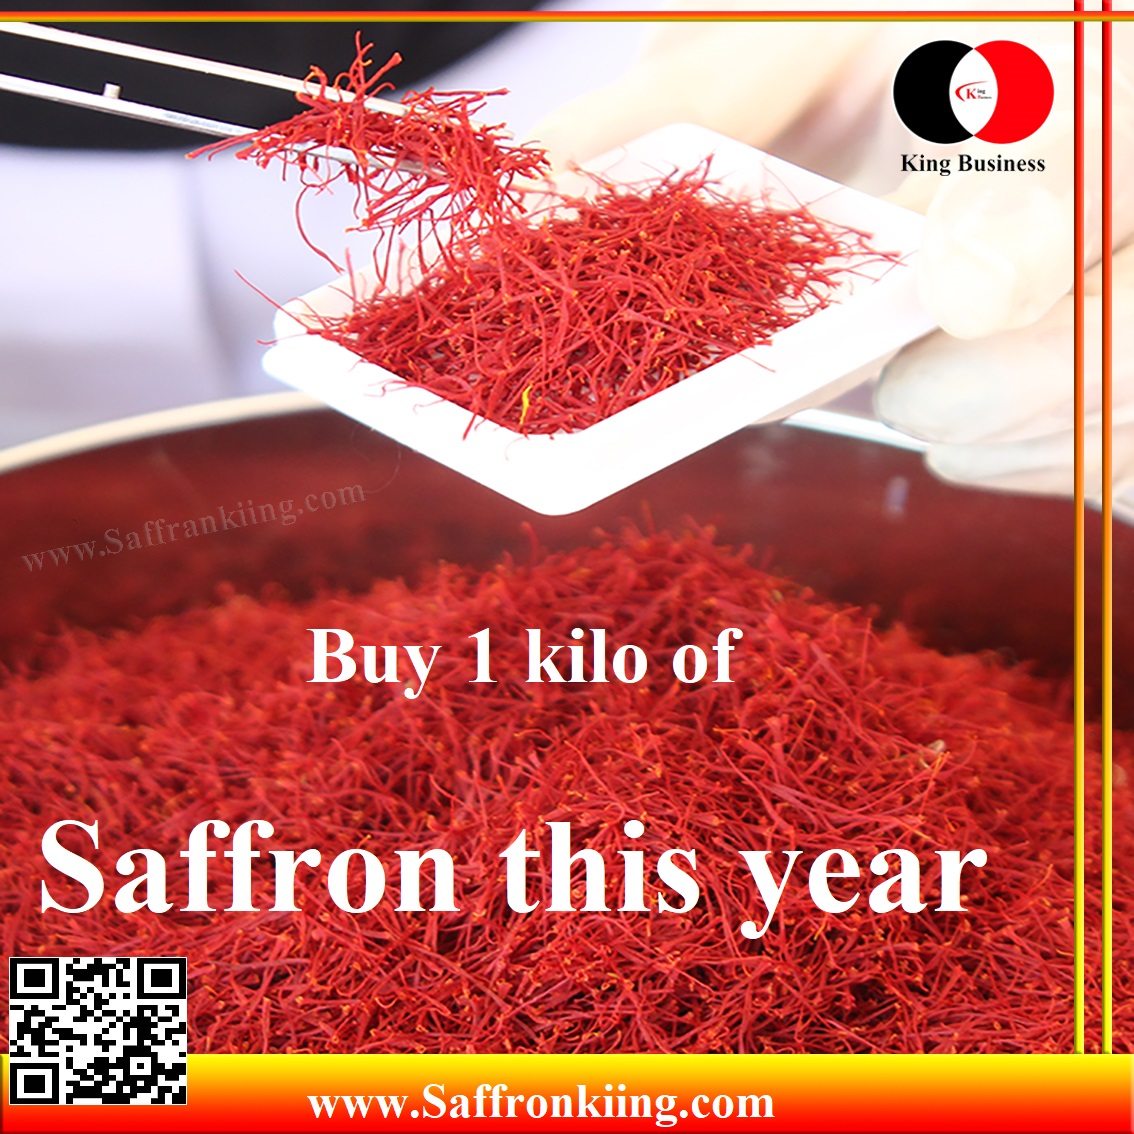 Price per kg of saffron